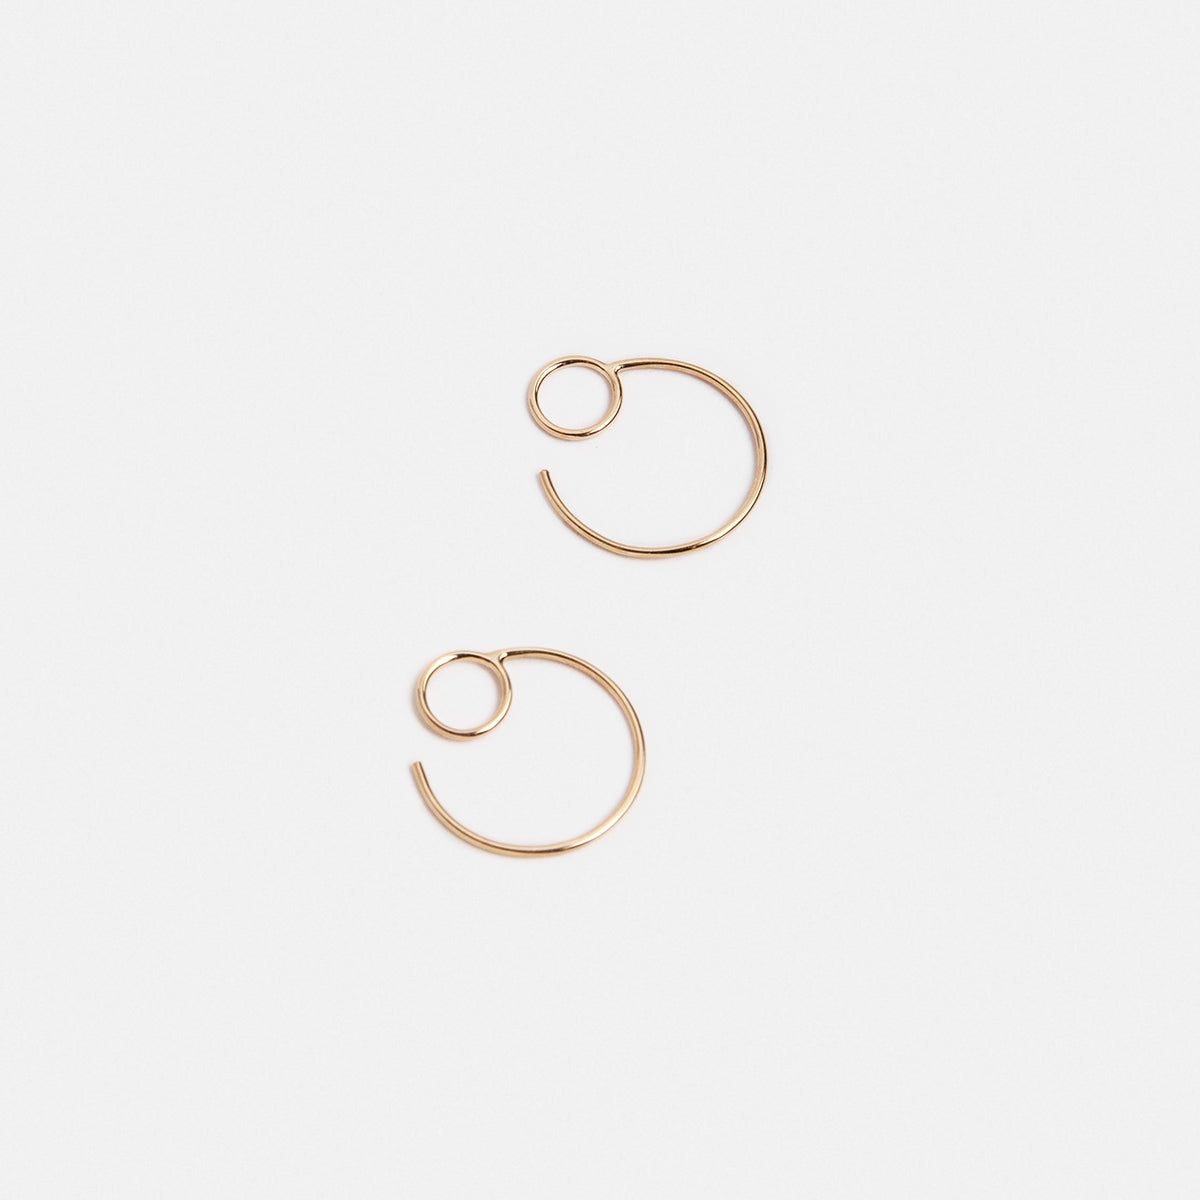 Saga Small Delicate Hoop Earrings in 14k Gold By SHW Fine Jewelry NYC